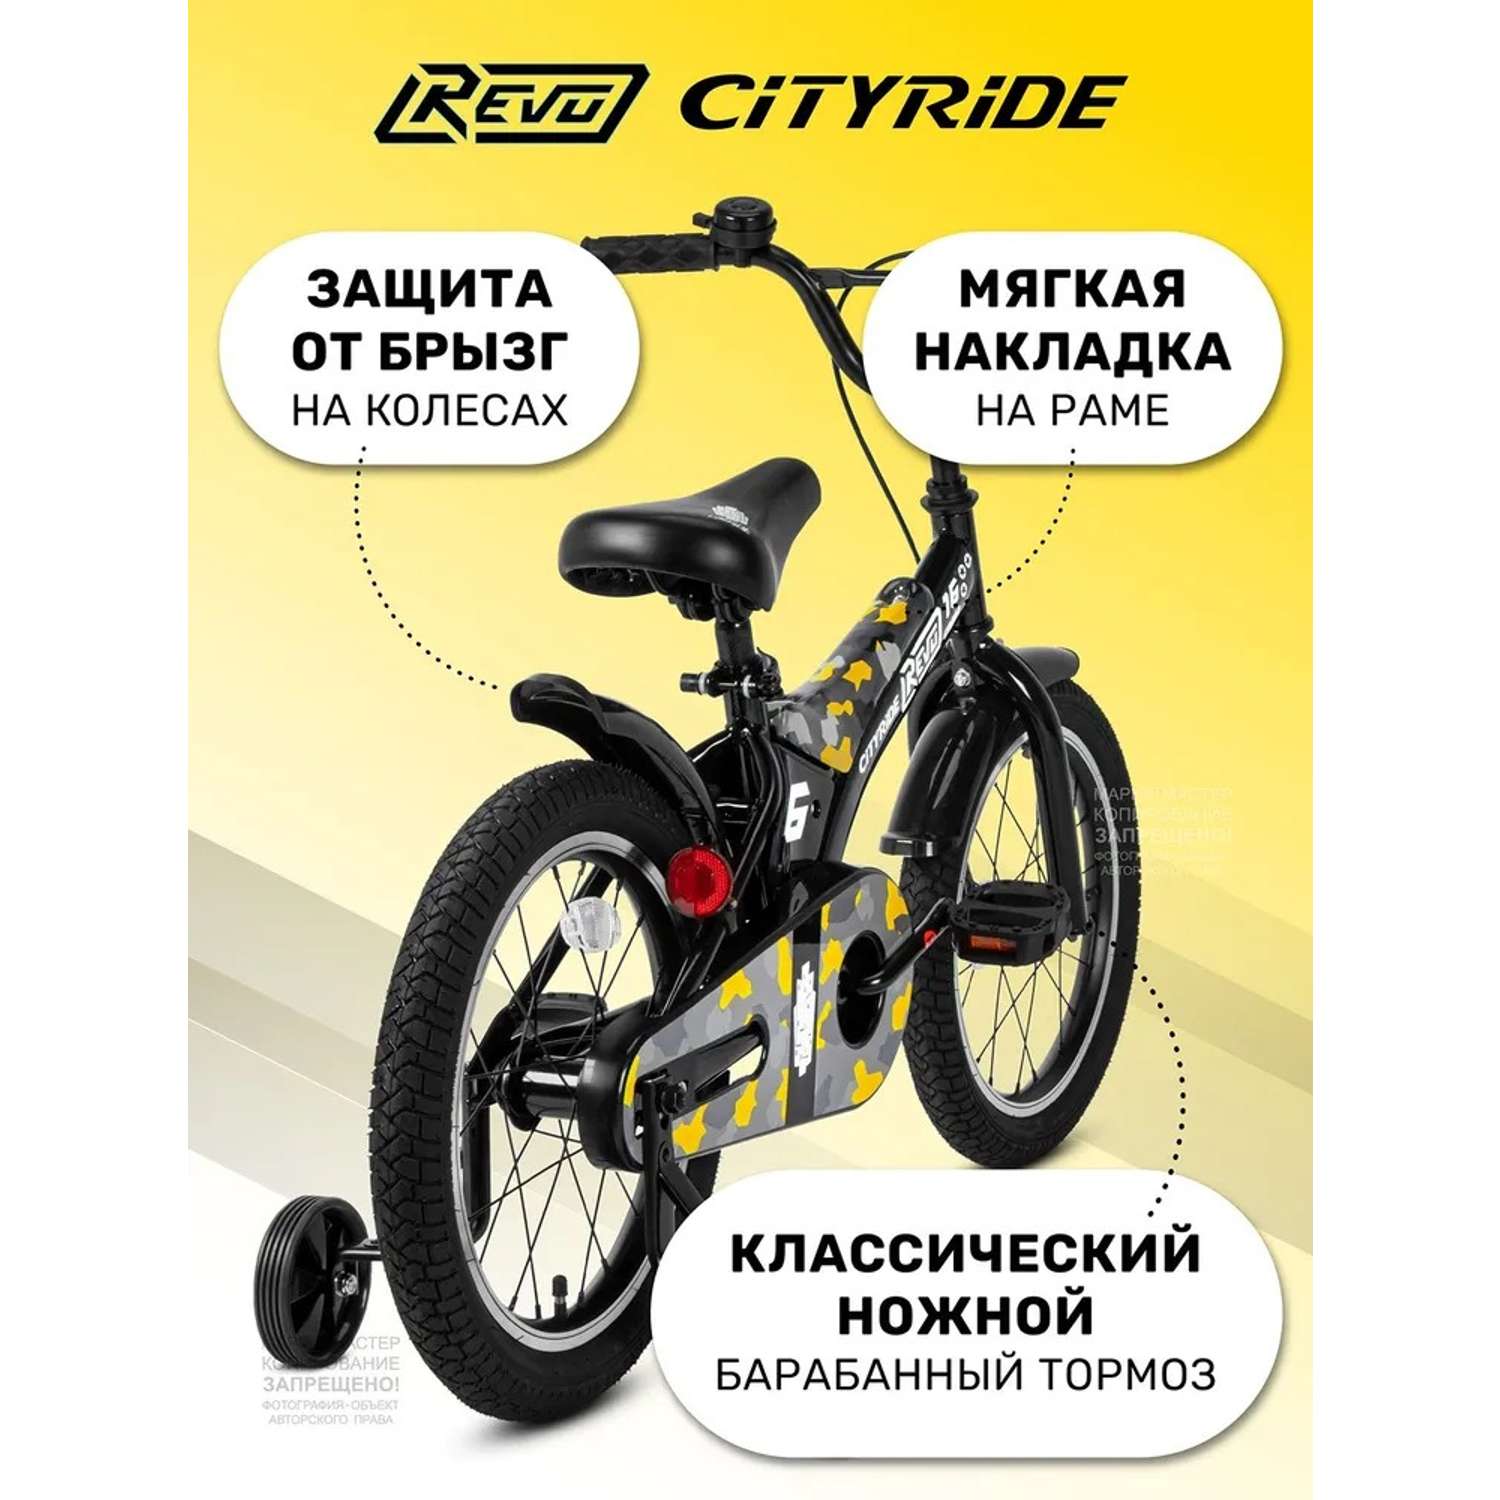 Детский велосипед CITYRIDE Двухколесный Cityride REVO Рама сталь Кожух цепи 100% Диски алюминий 16 Втулки сталь - фото 4